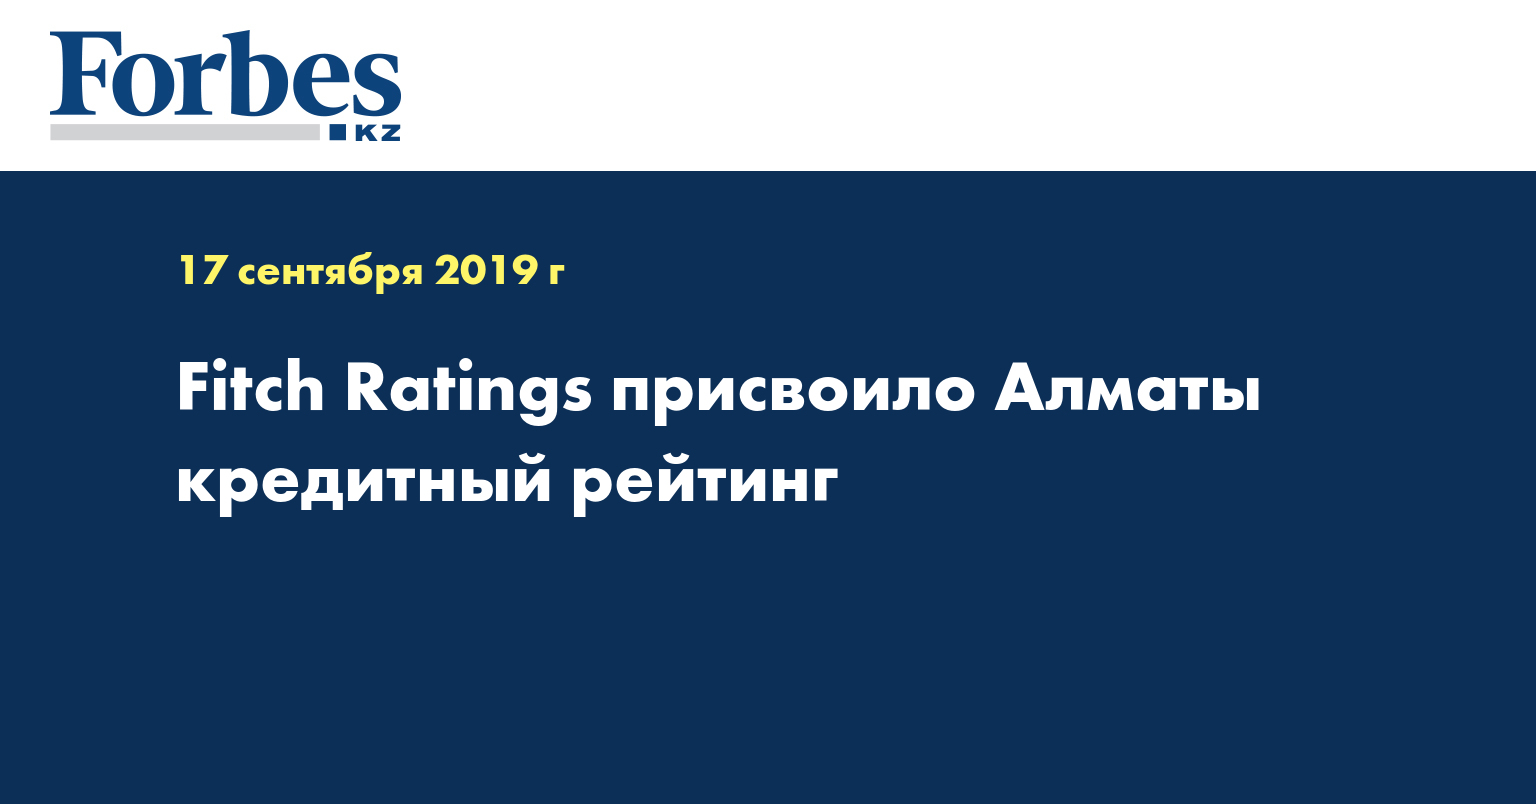 Fitch Ratings присвоило Алматы кредитный рейтинг